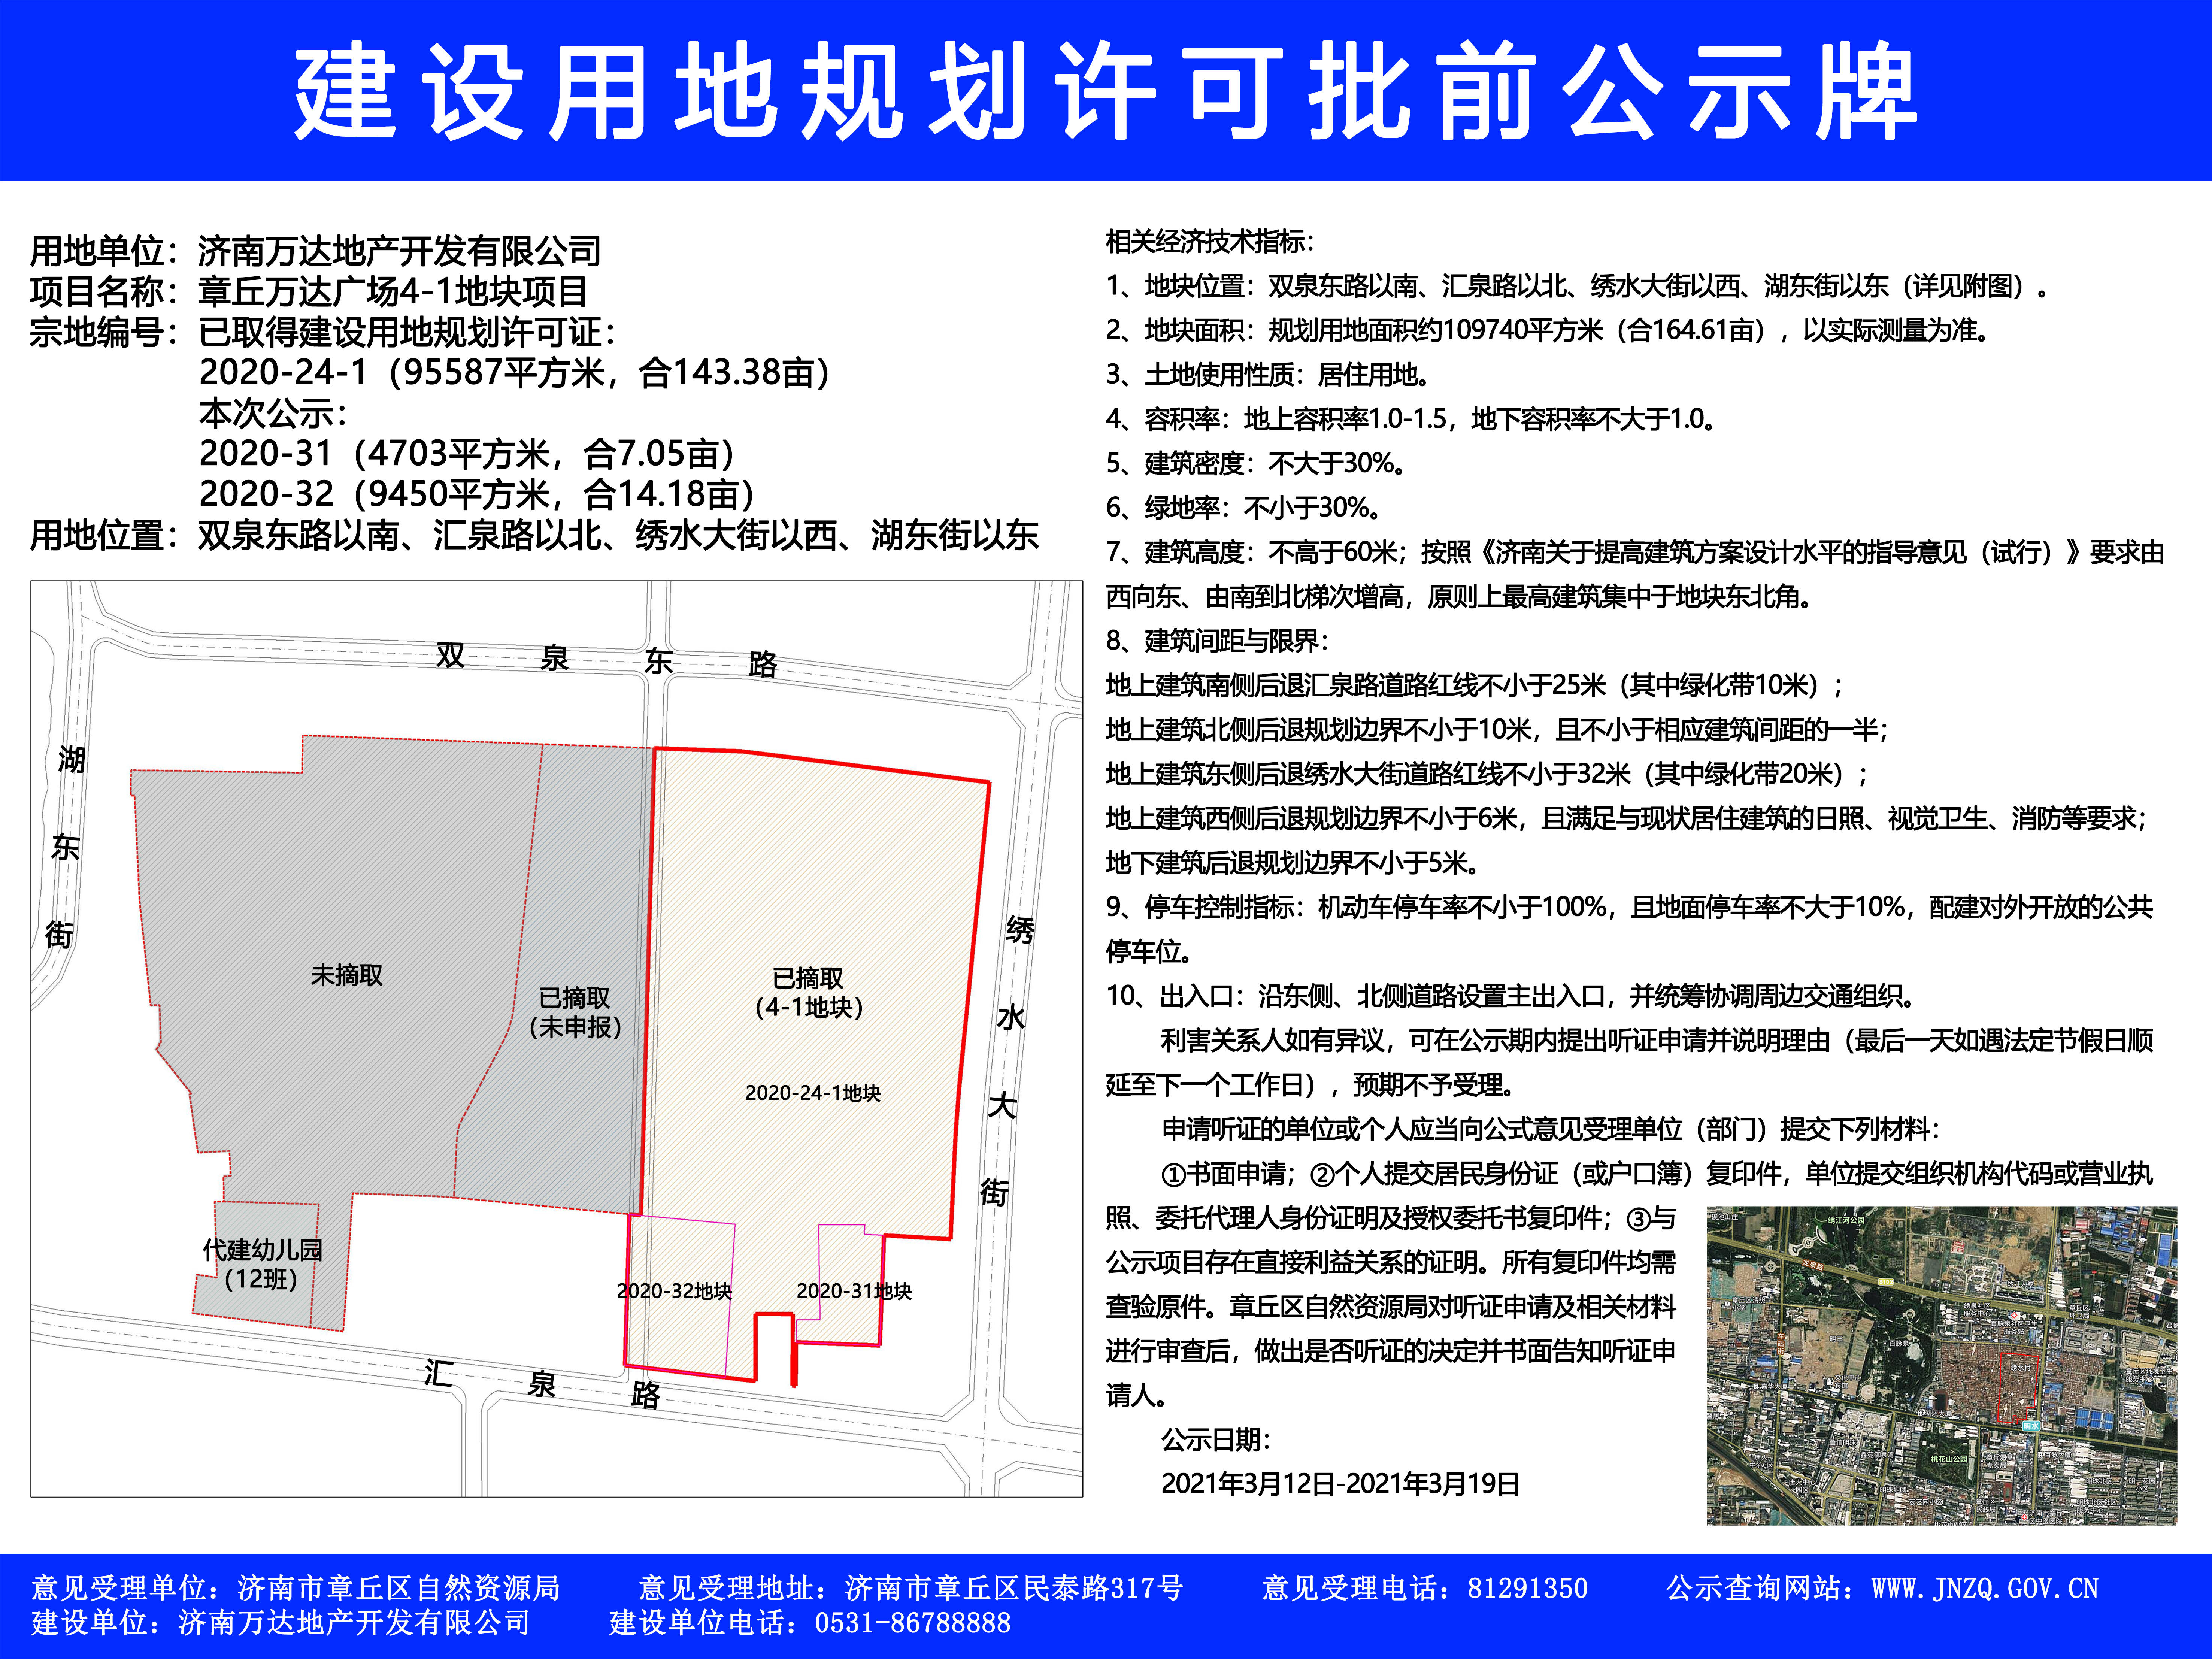 济南章丘万达广场居住地块建设规划许可批前公示